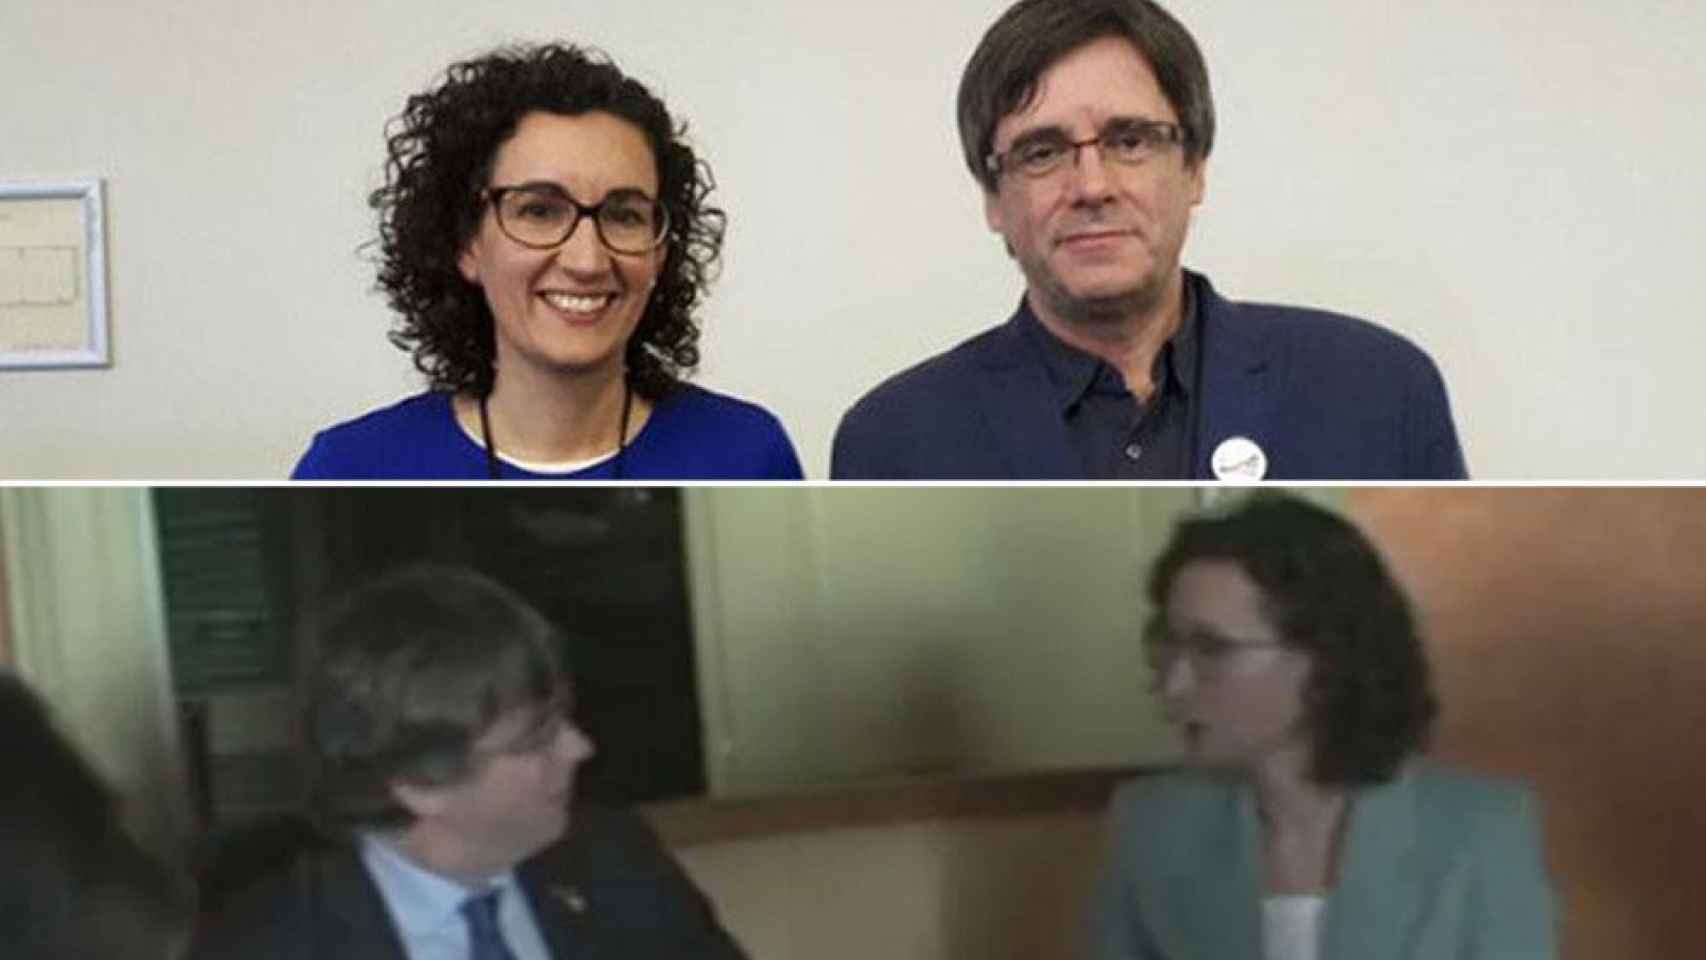 En la parte superior, imagen de Marta Rovira y Carles Puigdemont difundida por Rahola; en la inferior, el encuentro entre ambos de esta semana